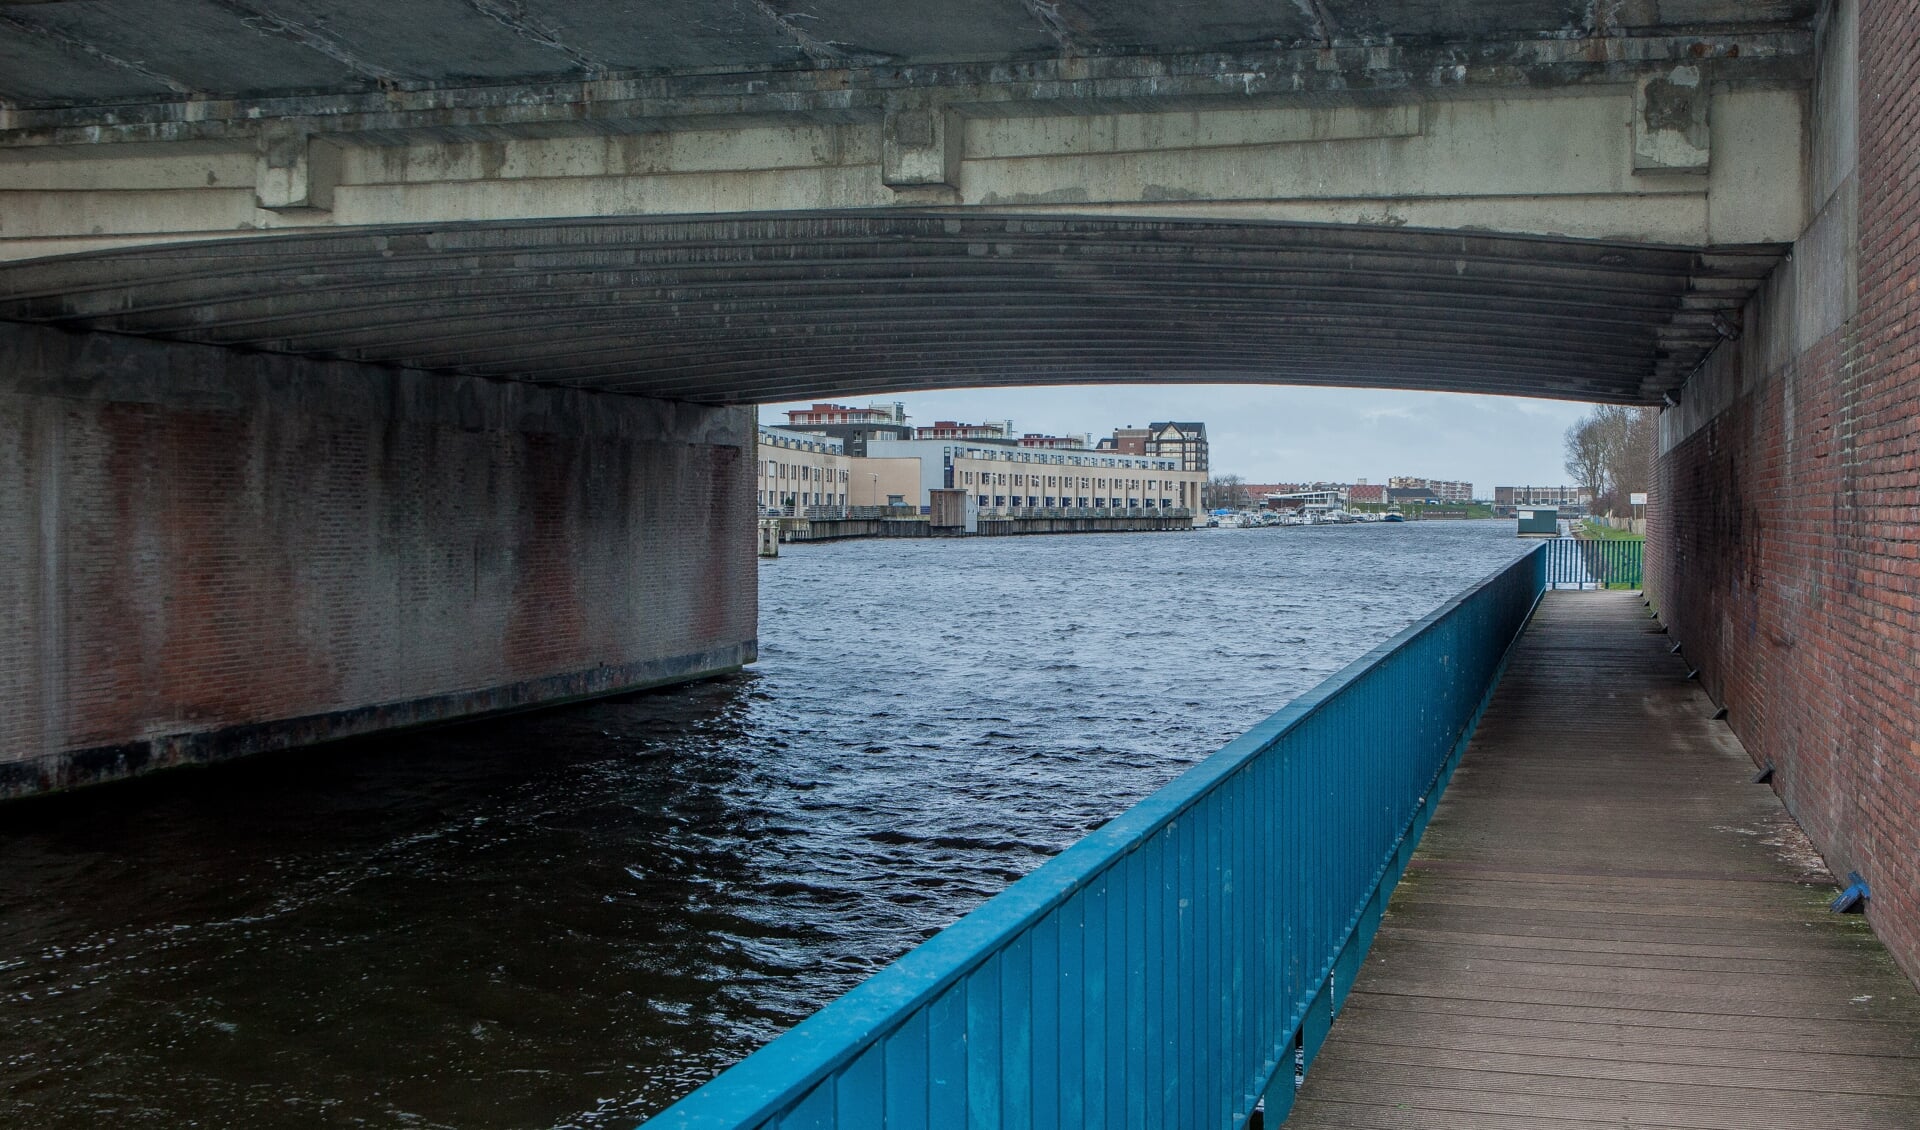 De watersportondernemingen willen in het hoogseizoen doorvaart houden onder de Koningin Julianabrug. | Foto: Adrie van Duijvenvoorde